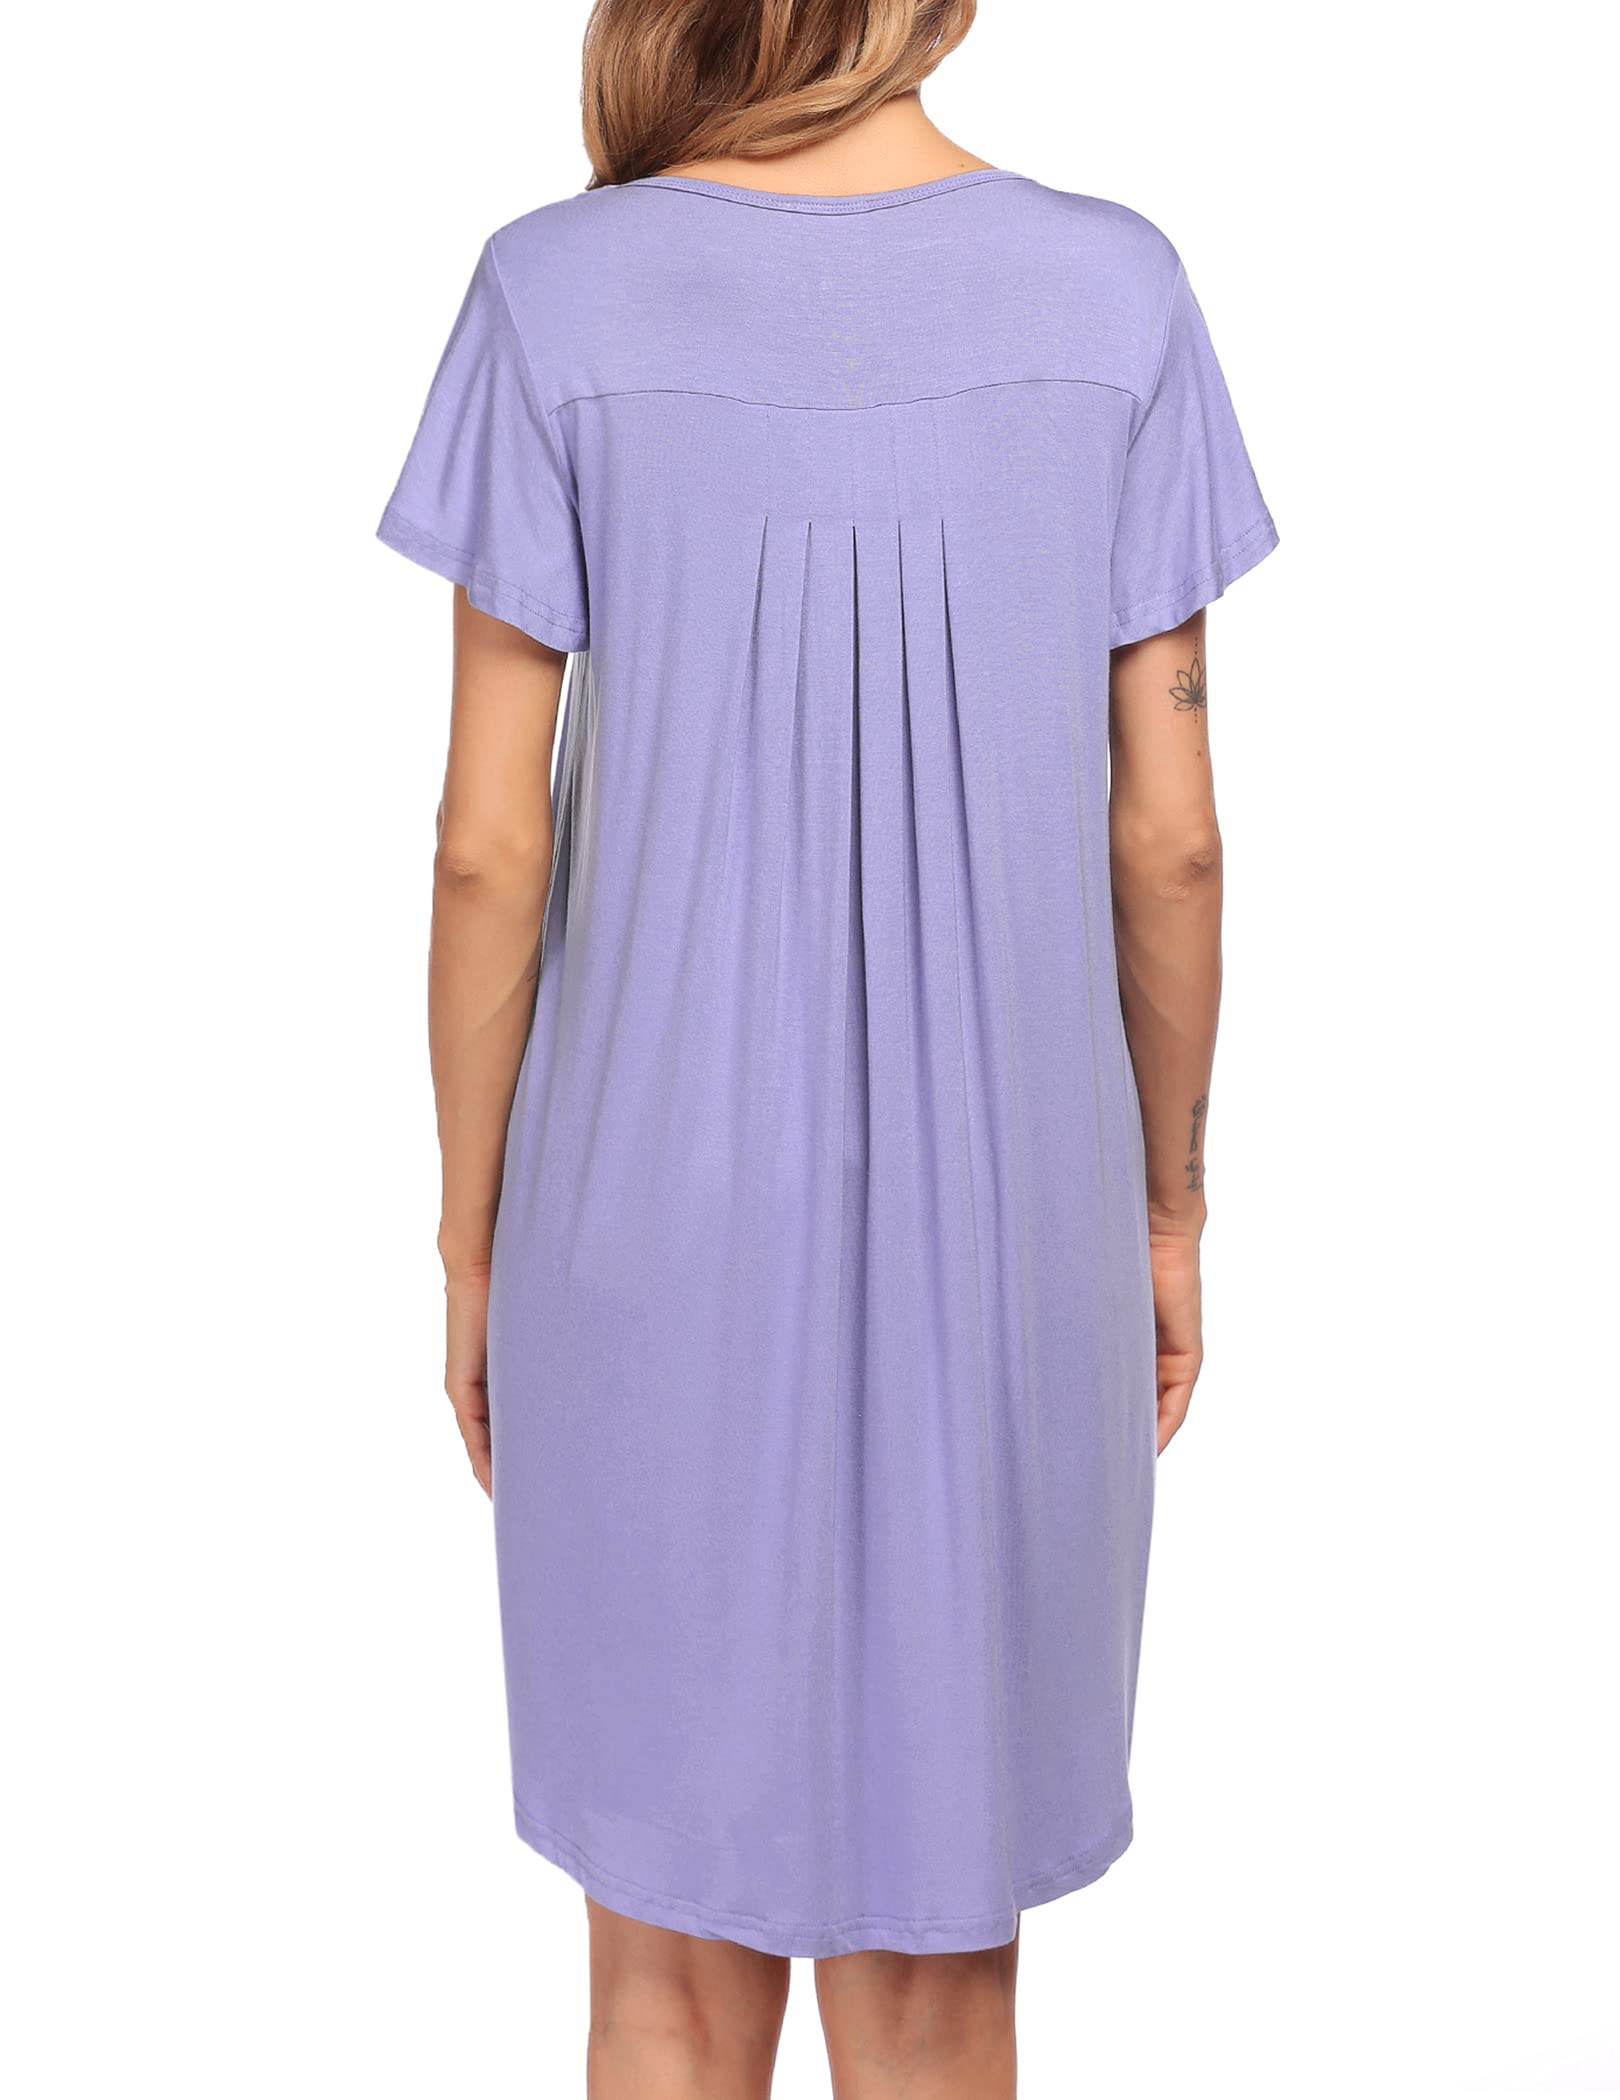 Эмэгтэй унтлагын цамц Зөөлөн унтлагын хувцас (50)